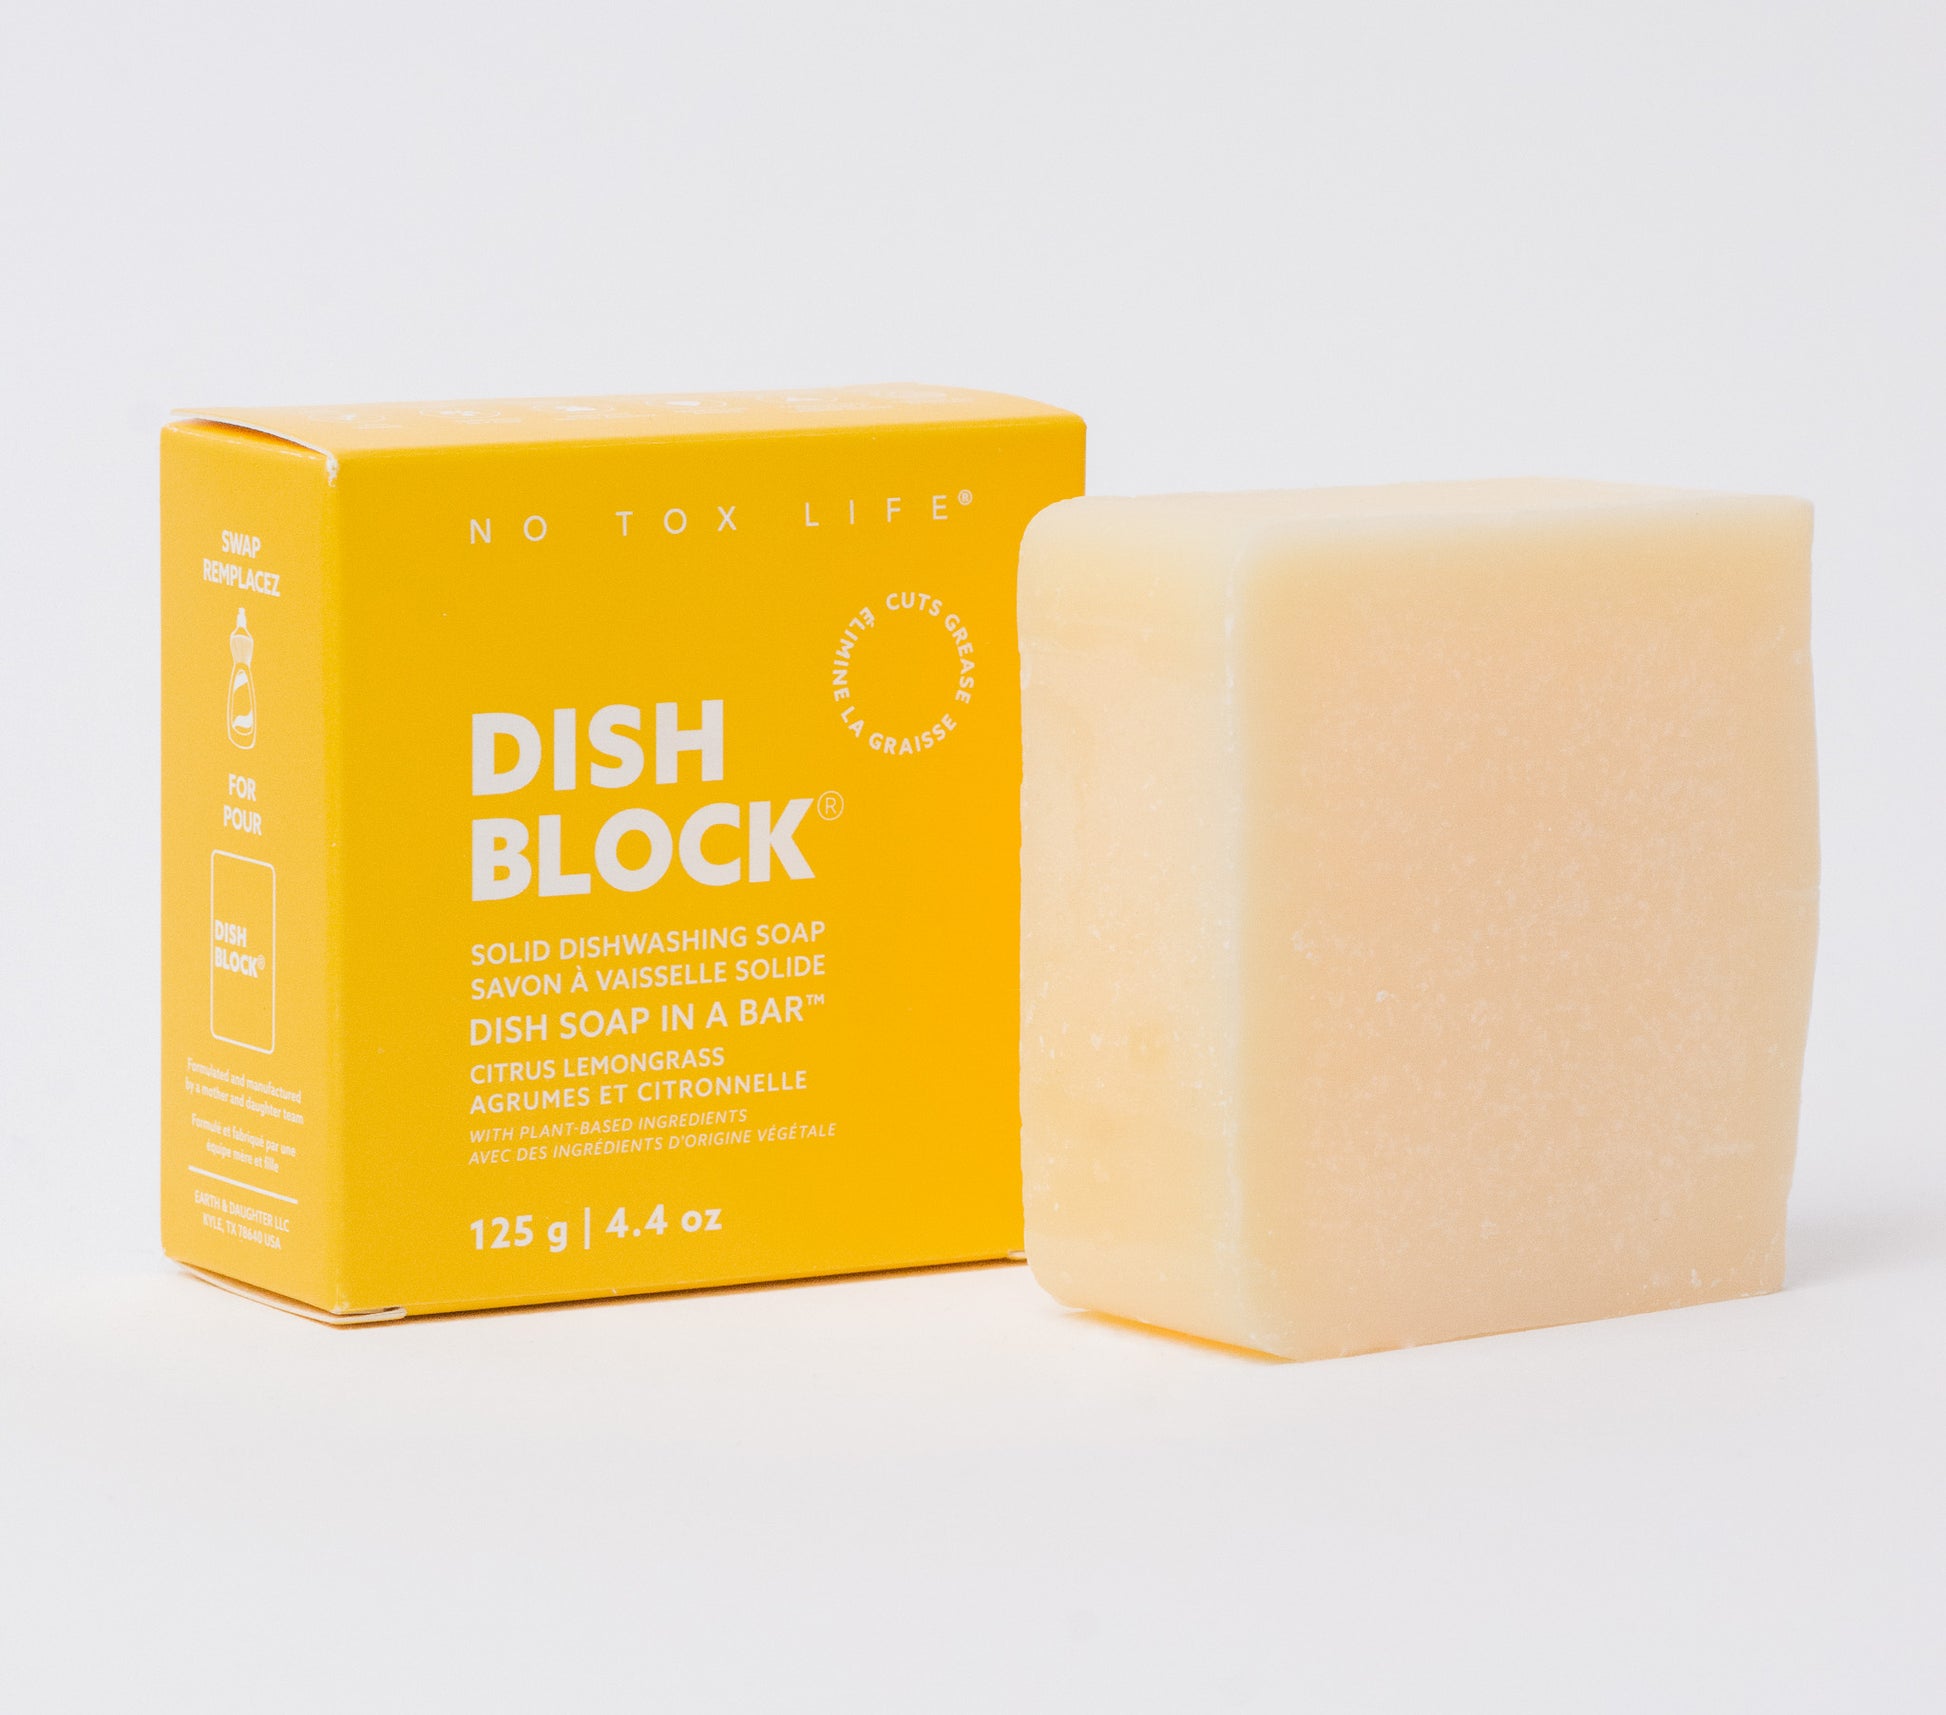 DISH BLOCK® solid dish soap - 6 oz (170g) bar